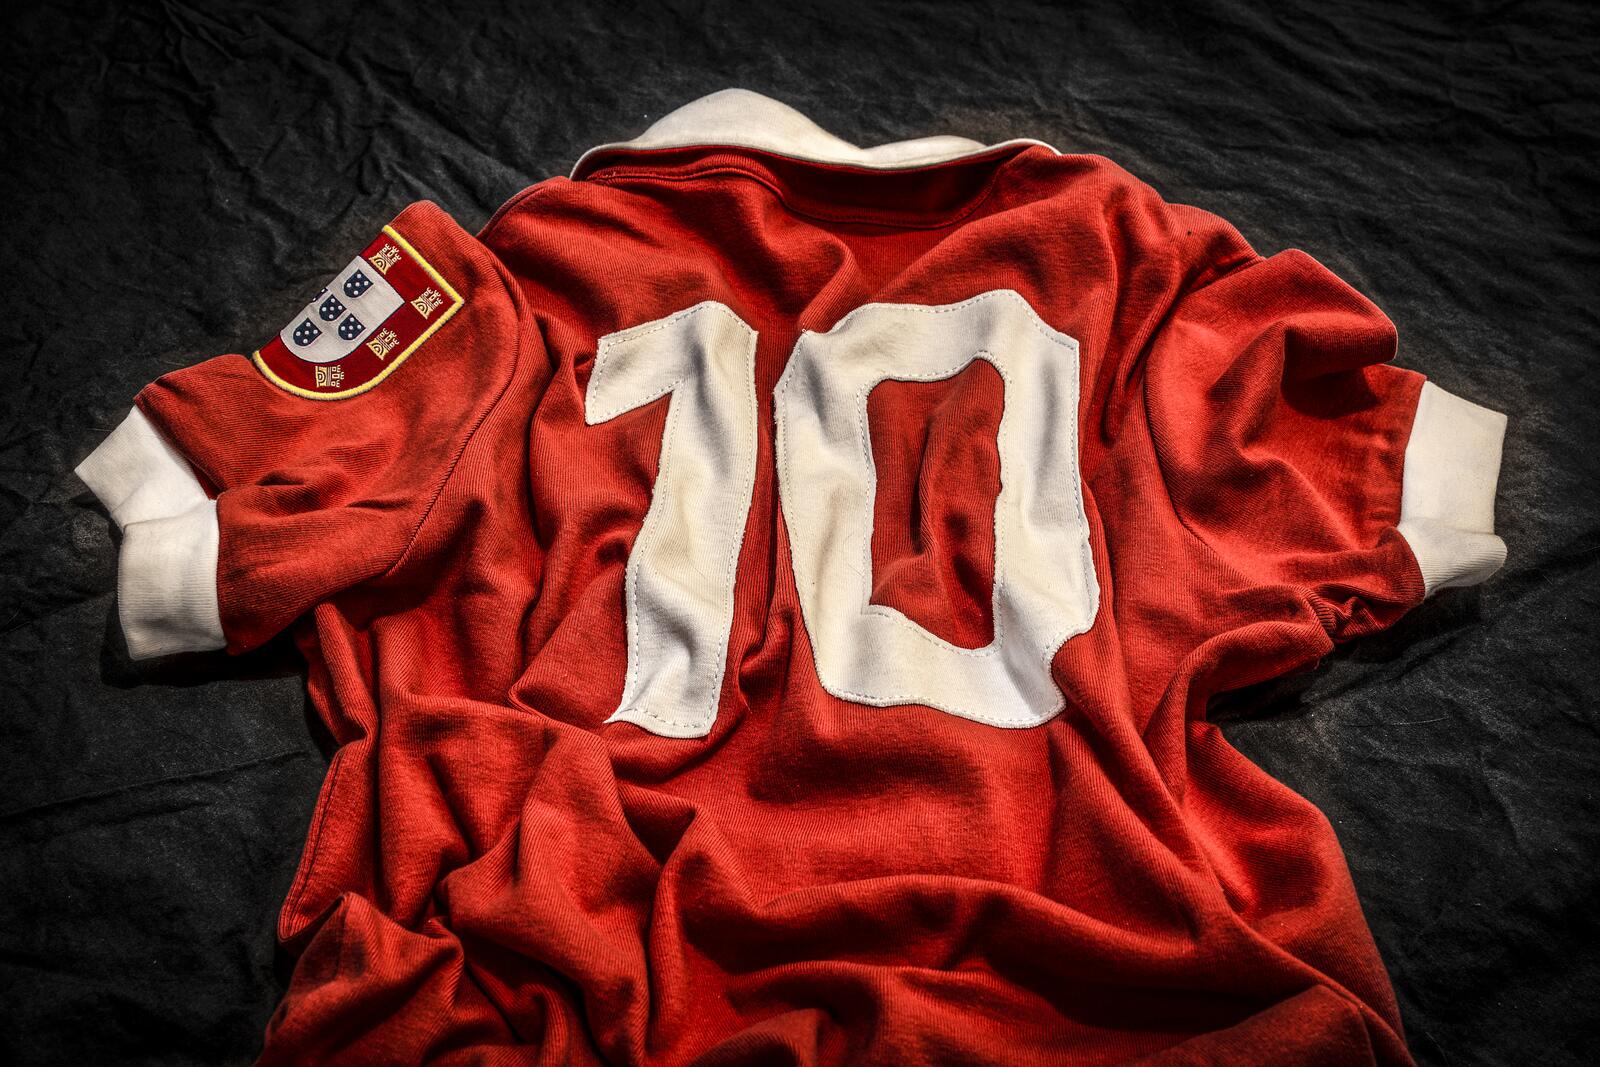 Eusébio shirt number 10 by A. Azevedo 